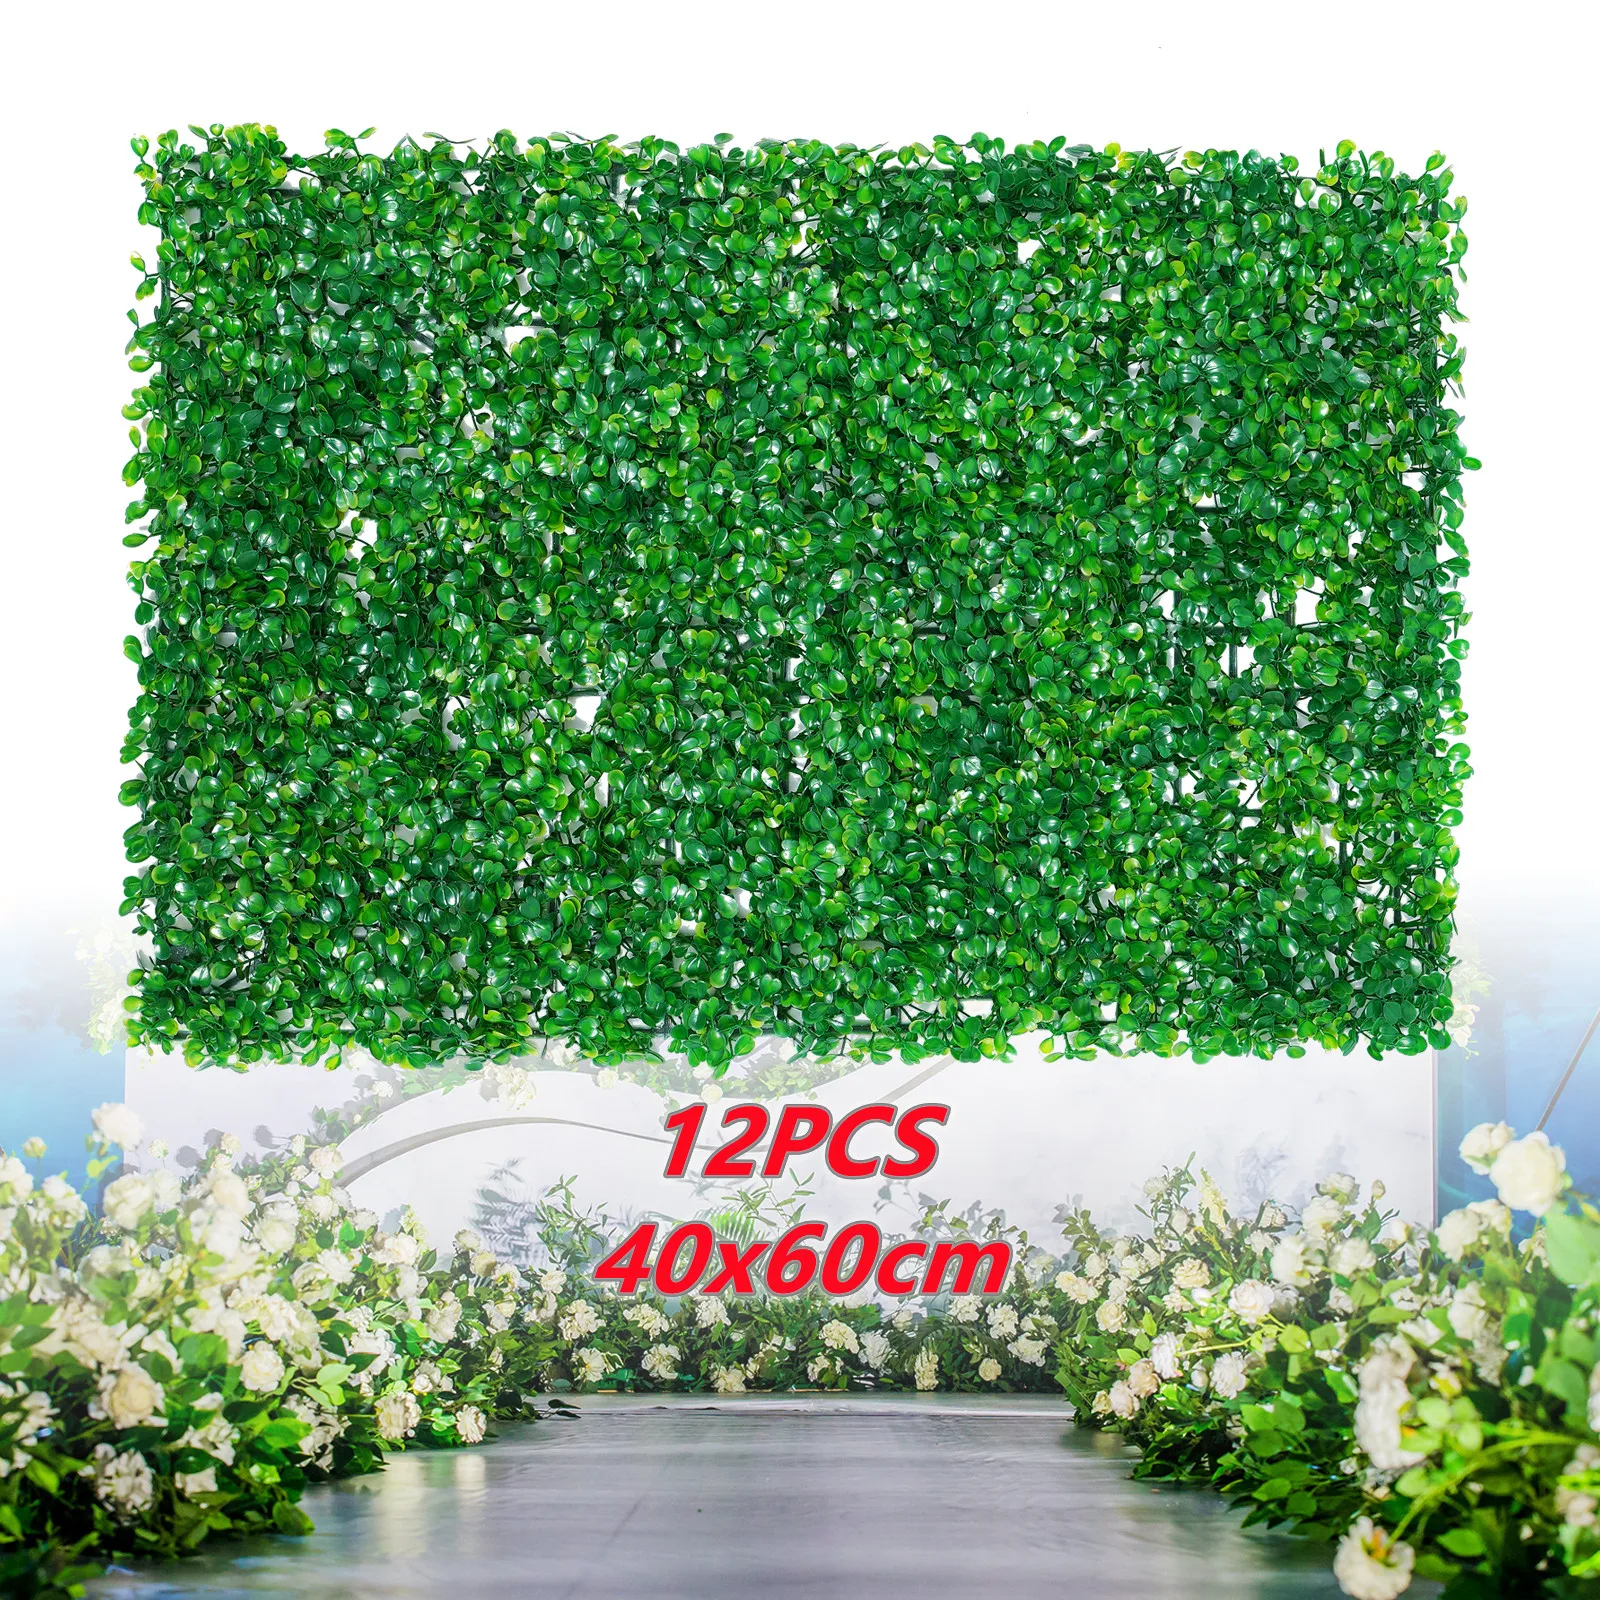 

12Pcs 40*60cm Artificial Hedge Decor High Density Ties Fence Panel Grass Mat Garden Backyard Wall Decor